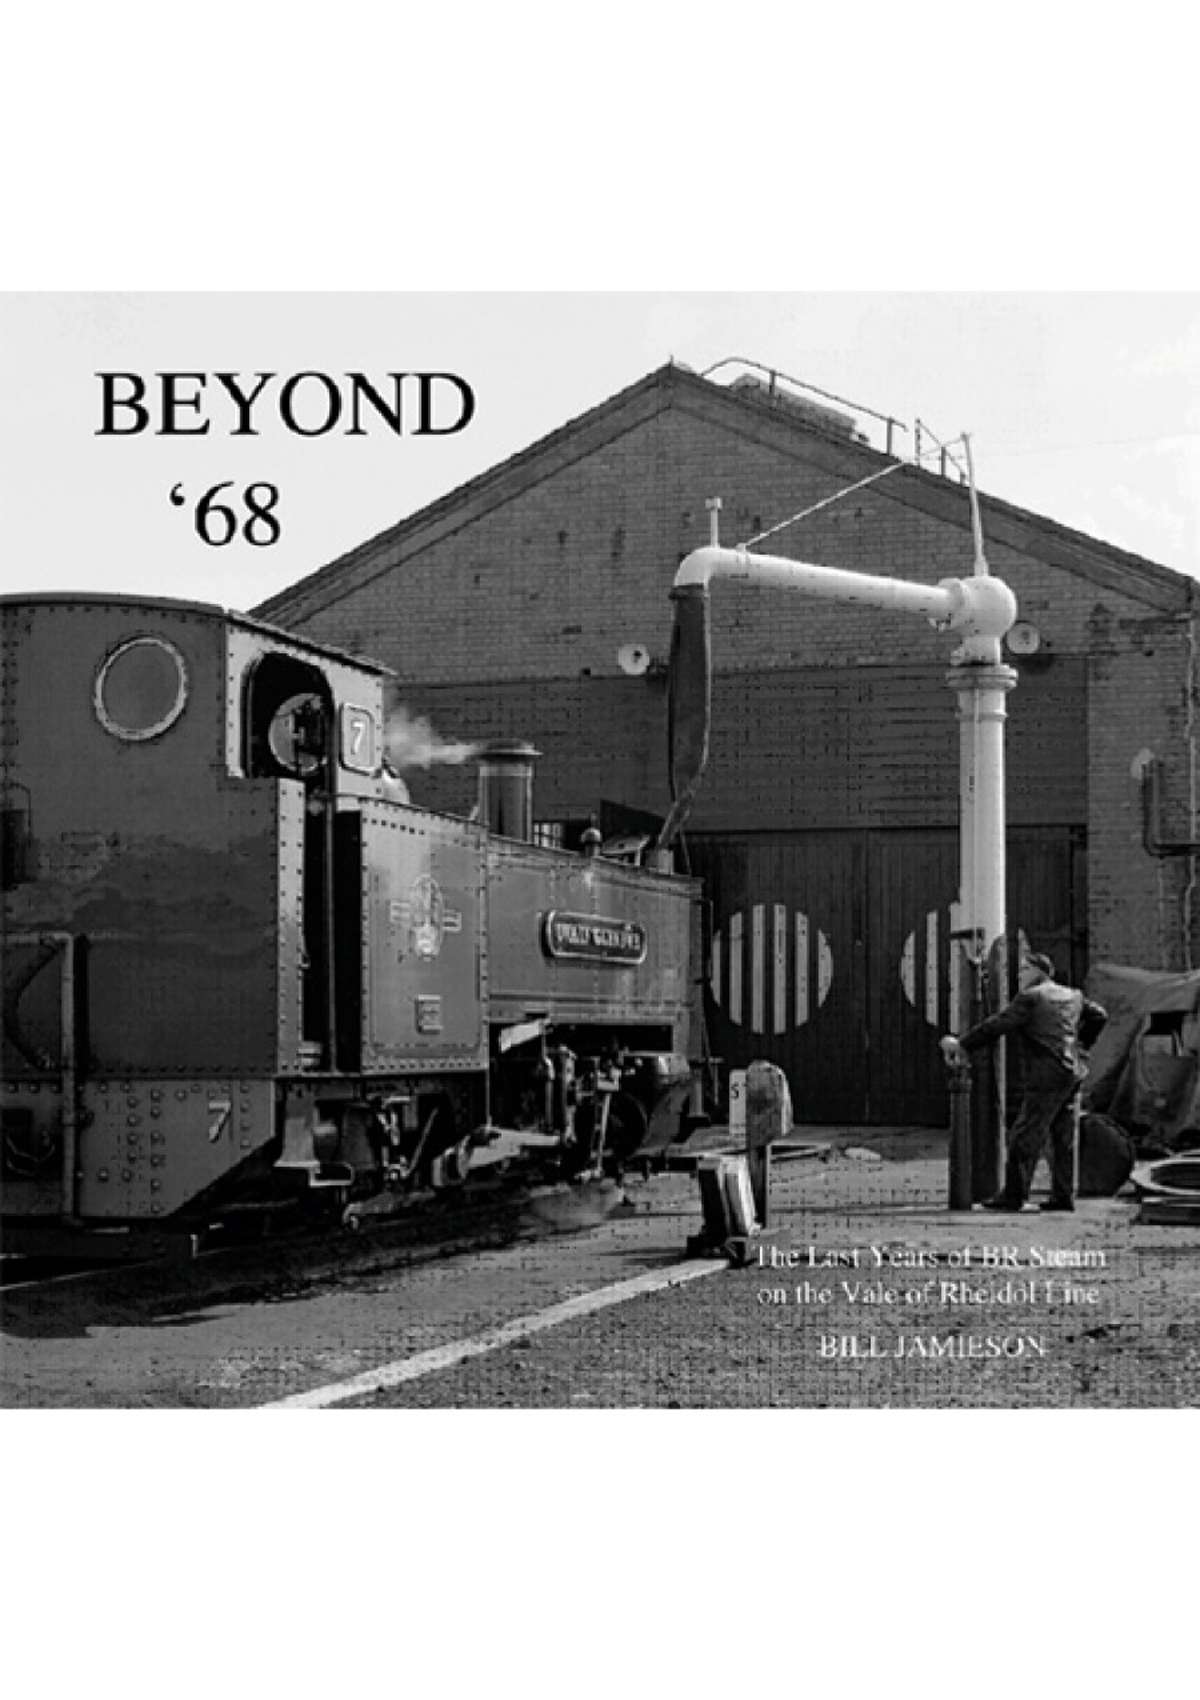 0408 - Beyond 68 - The Last Years of BR Steam on the Vale of Rheidol Line